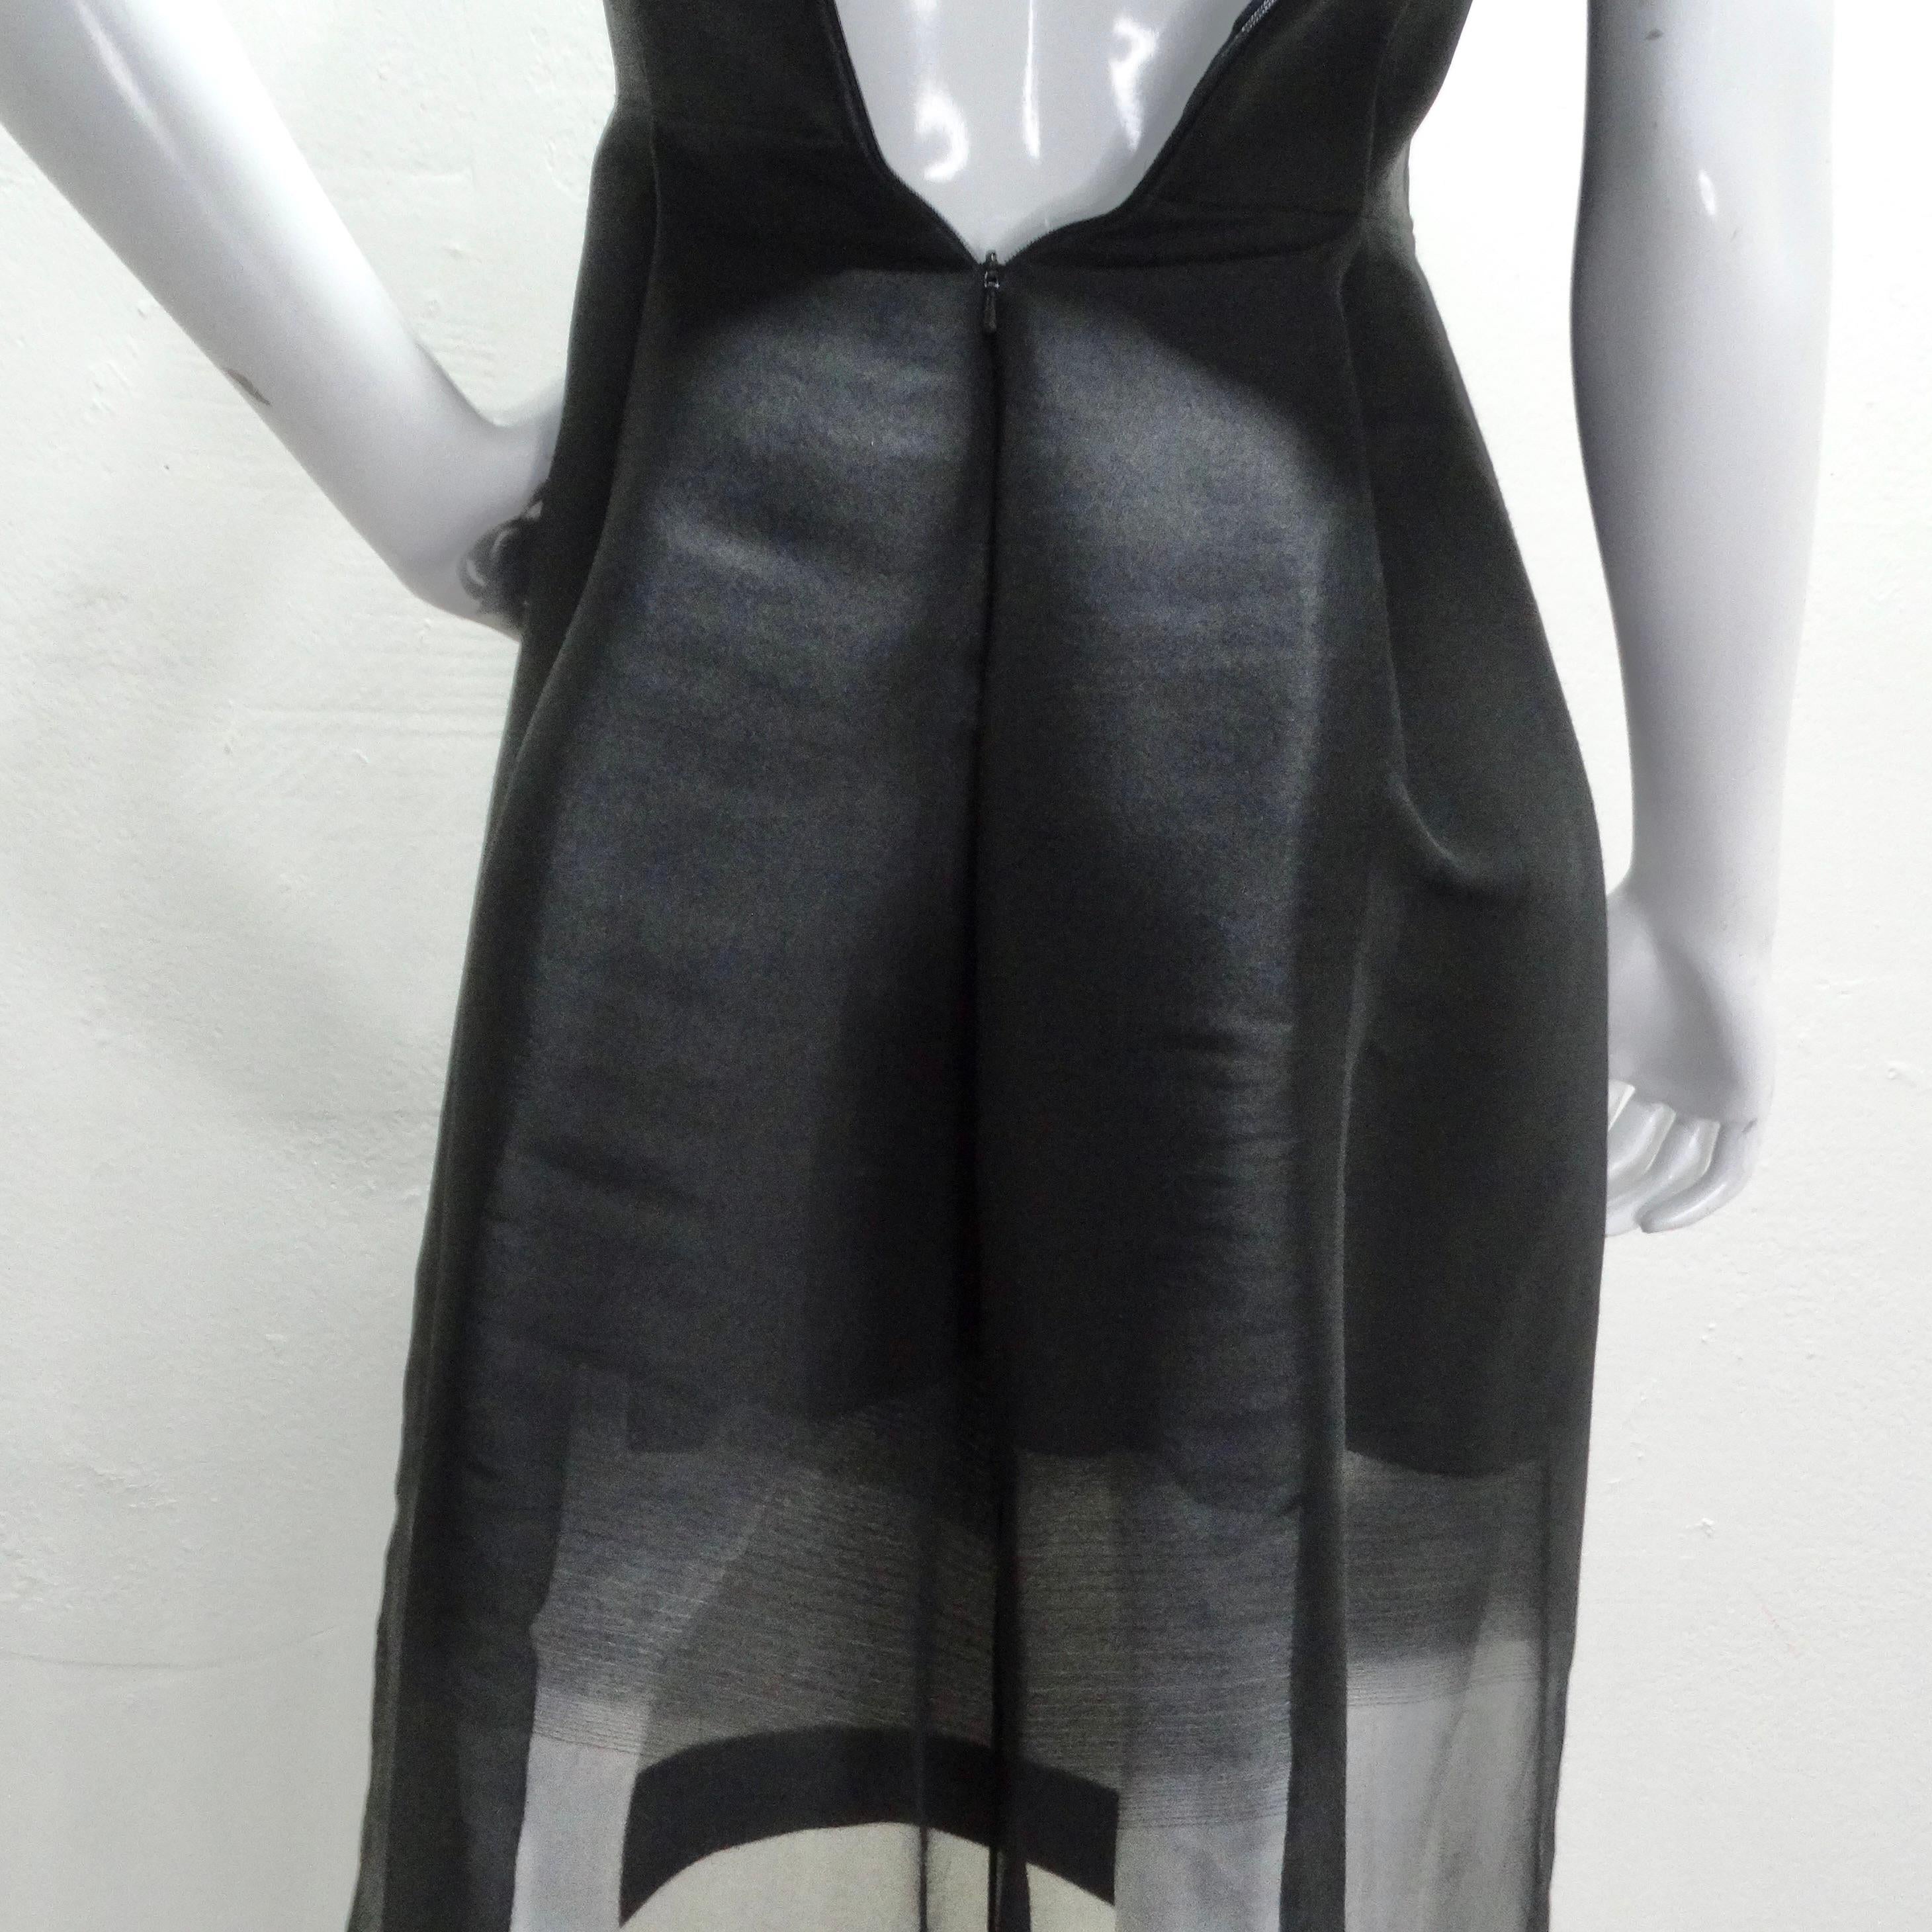 Alexander McQueen Fall 2020 Sheer Gradient Black Maxi Dress 4